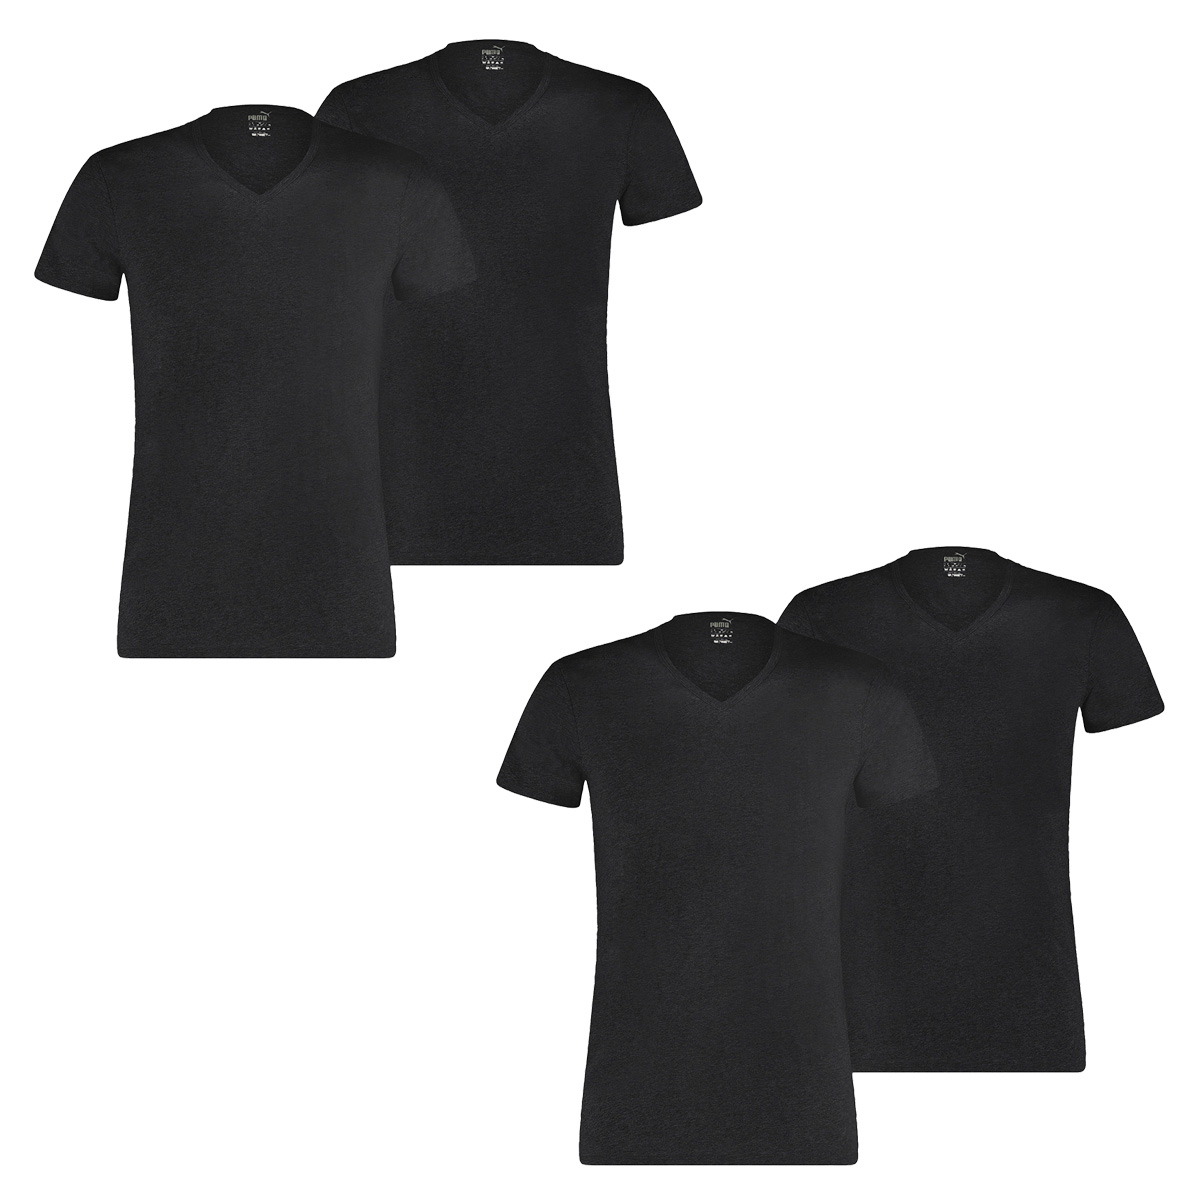 Puma 6 er Pack Basic V Neck T-Shirt Men Herren Unterhemd V-Ausschnitt, Bekleidungsgröße:M, Farbe:200 - Black